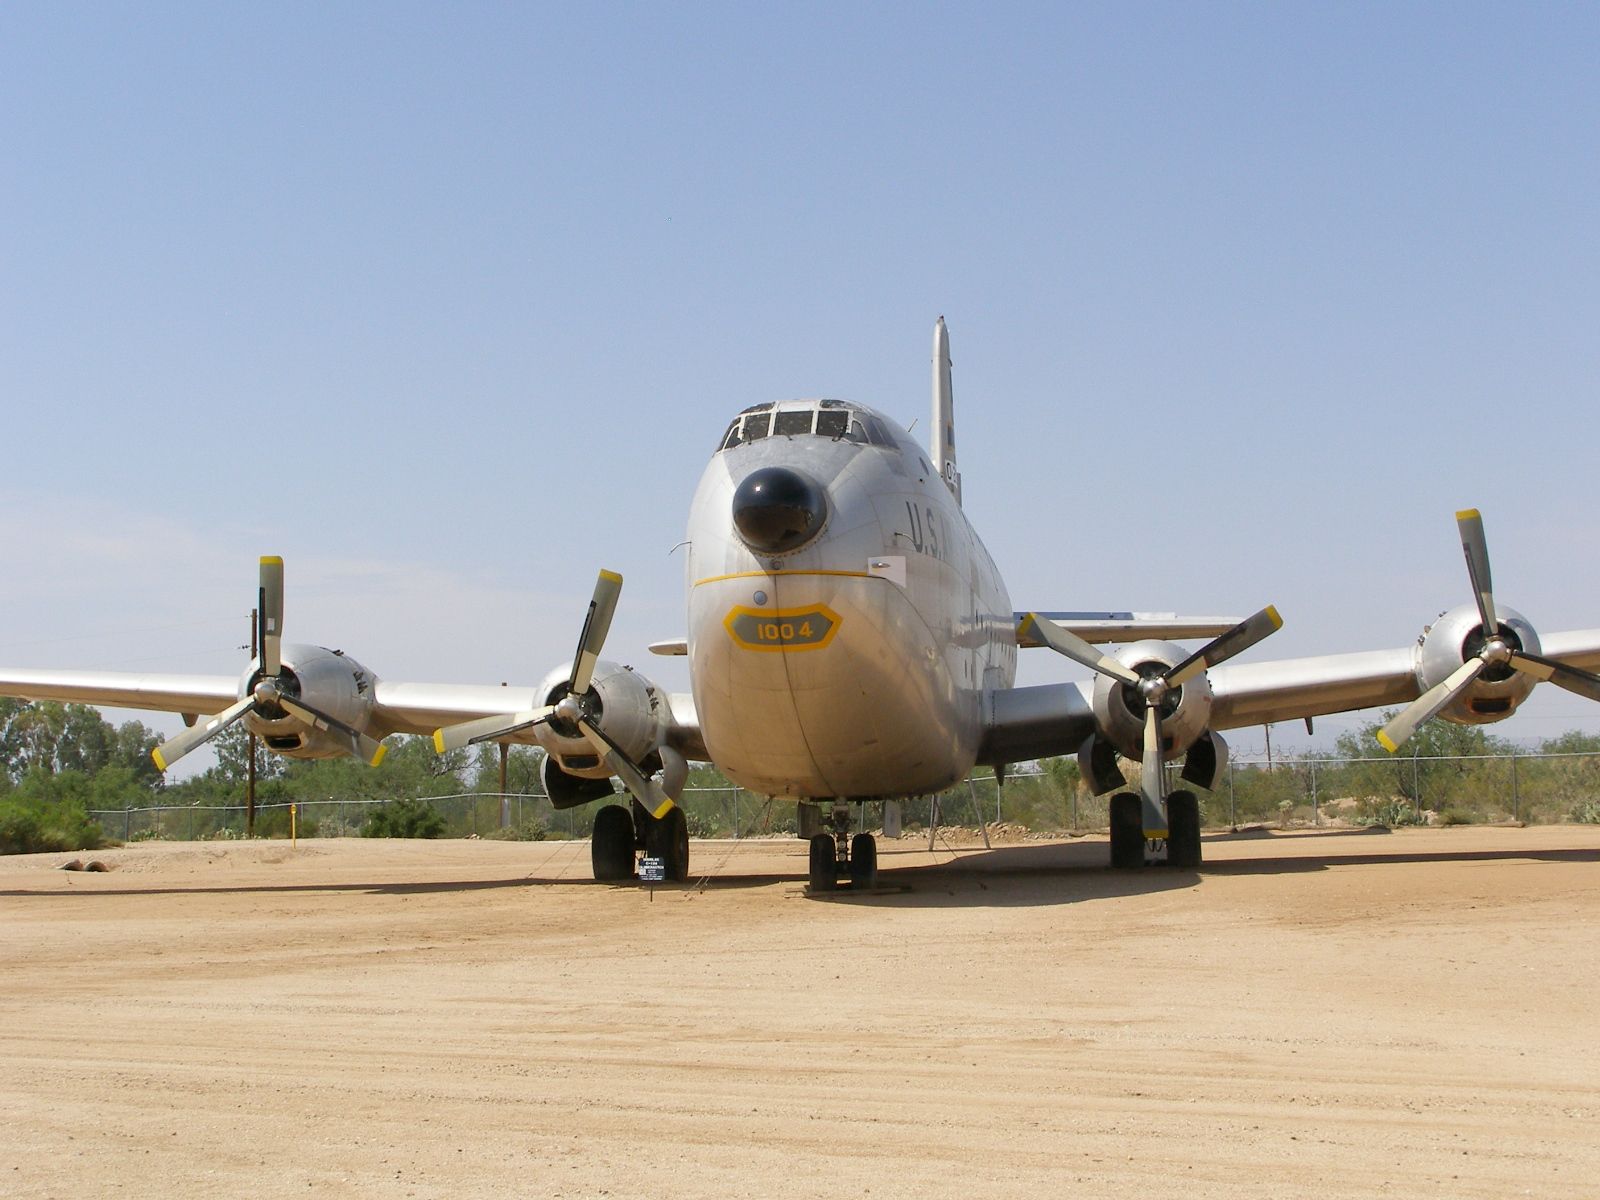 Douglas C-124C Globemaster II